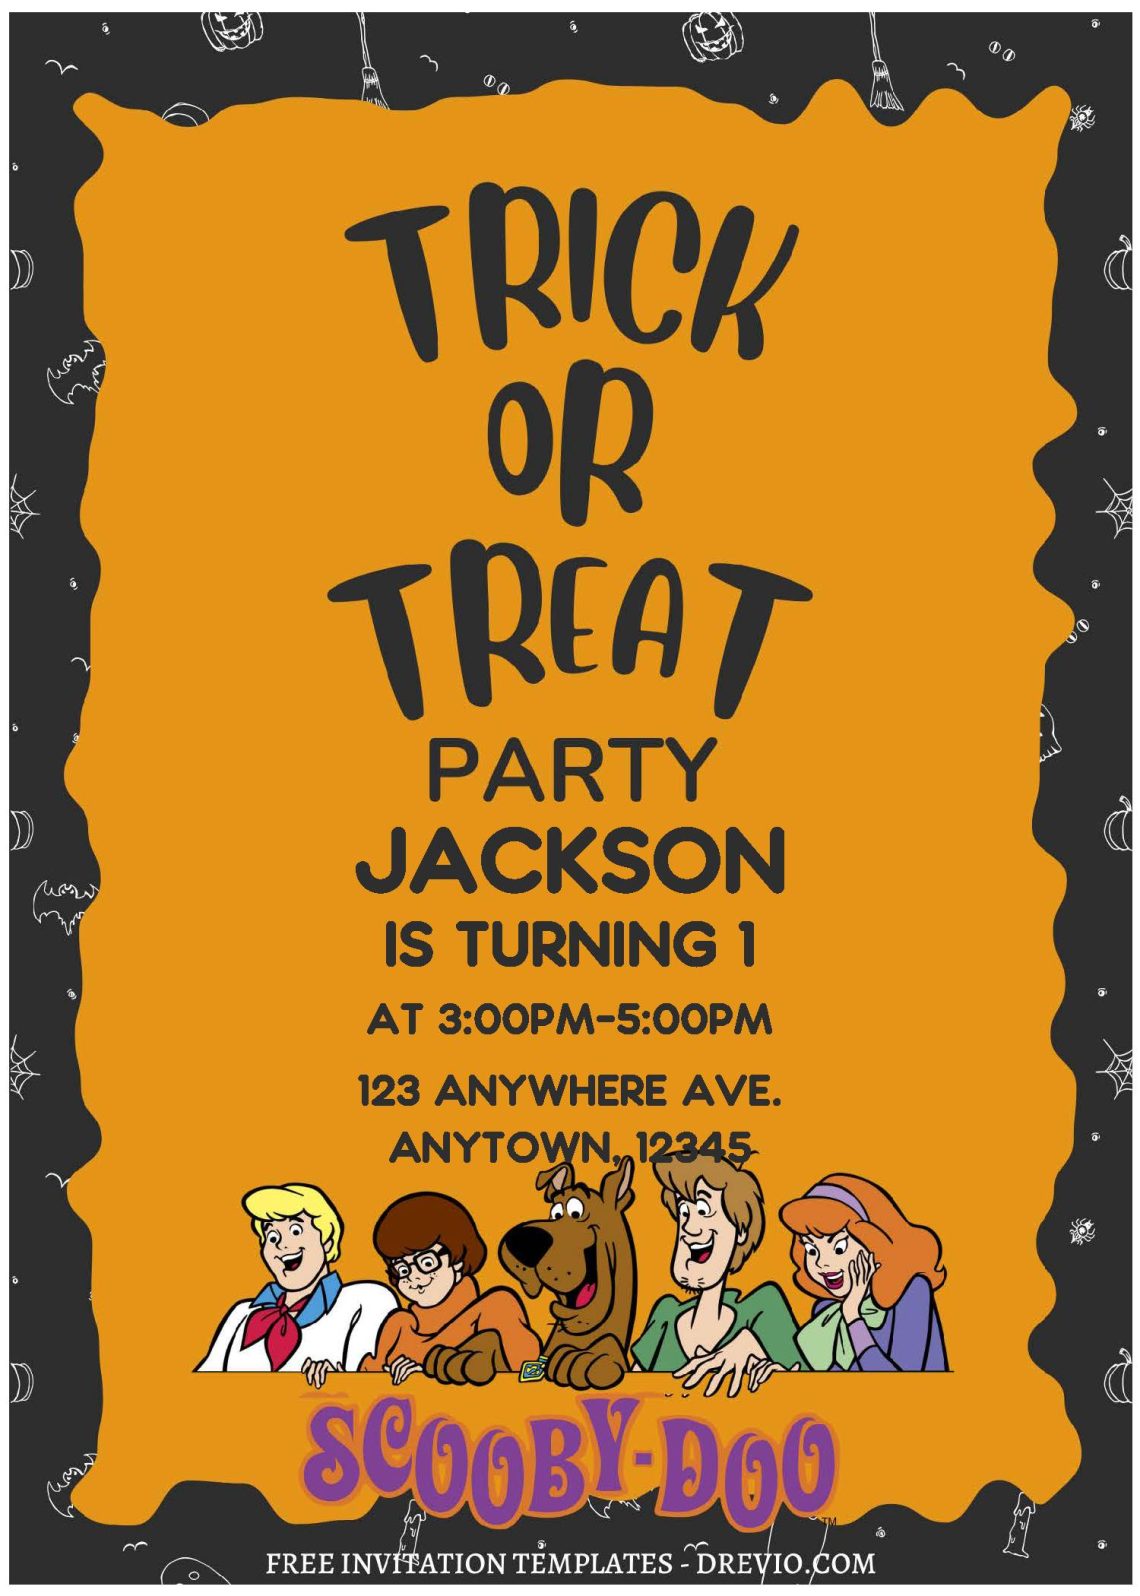 (Free Editable PDF) Scooby Dooby Doo Birthday Invitation Templates C